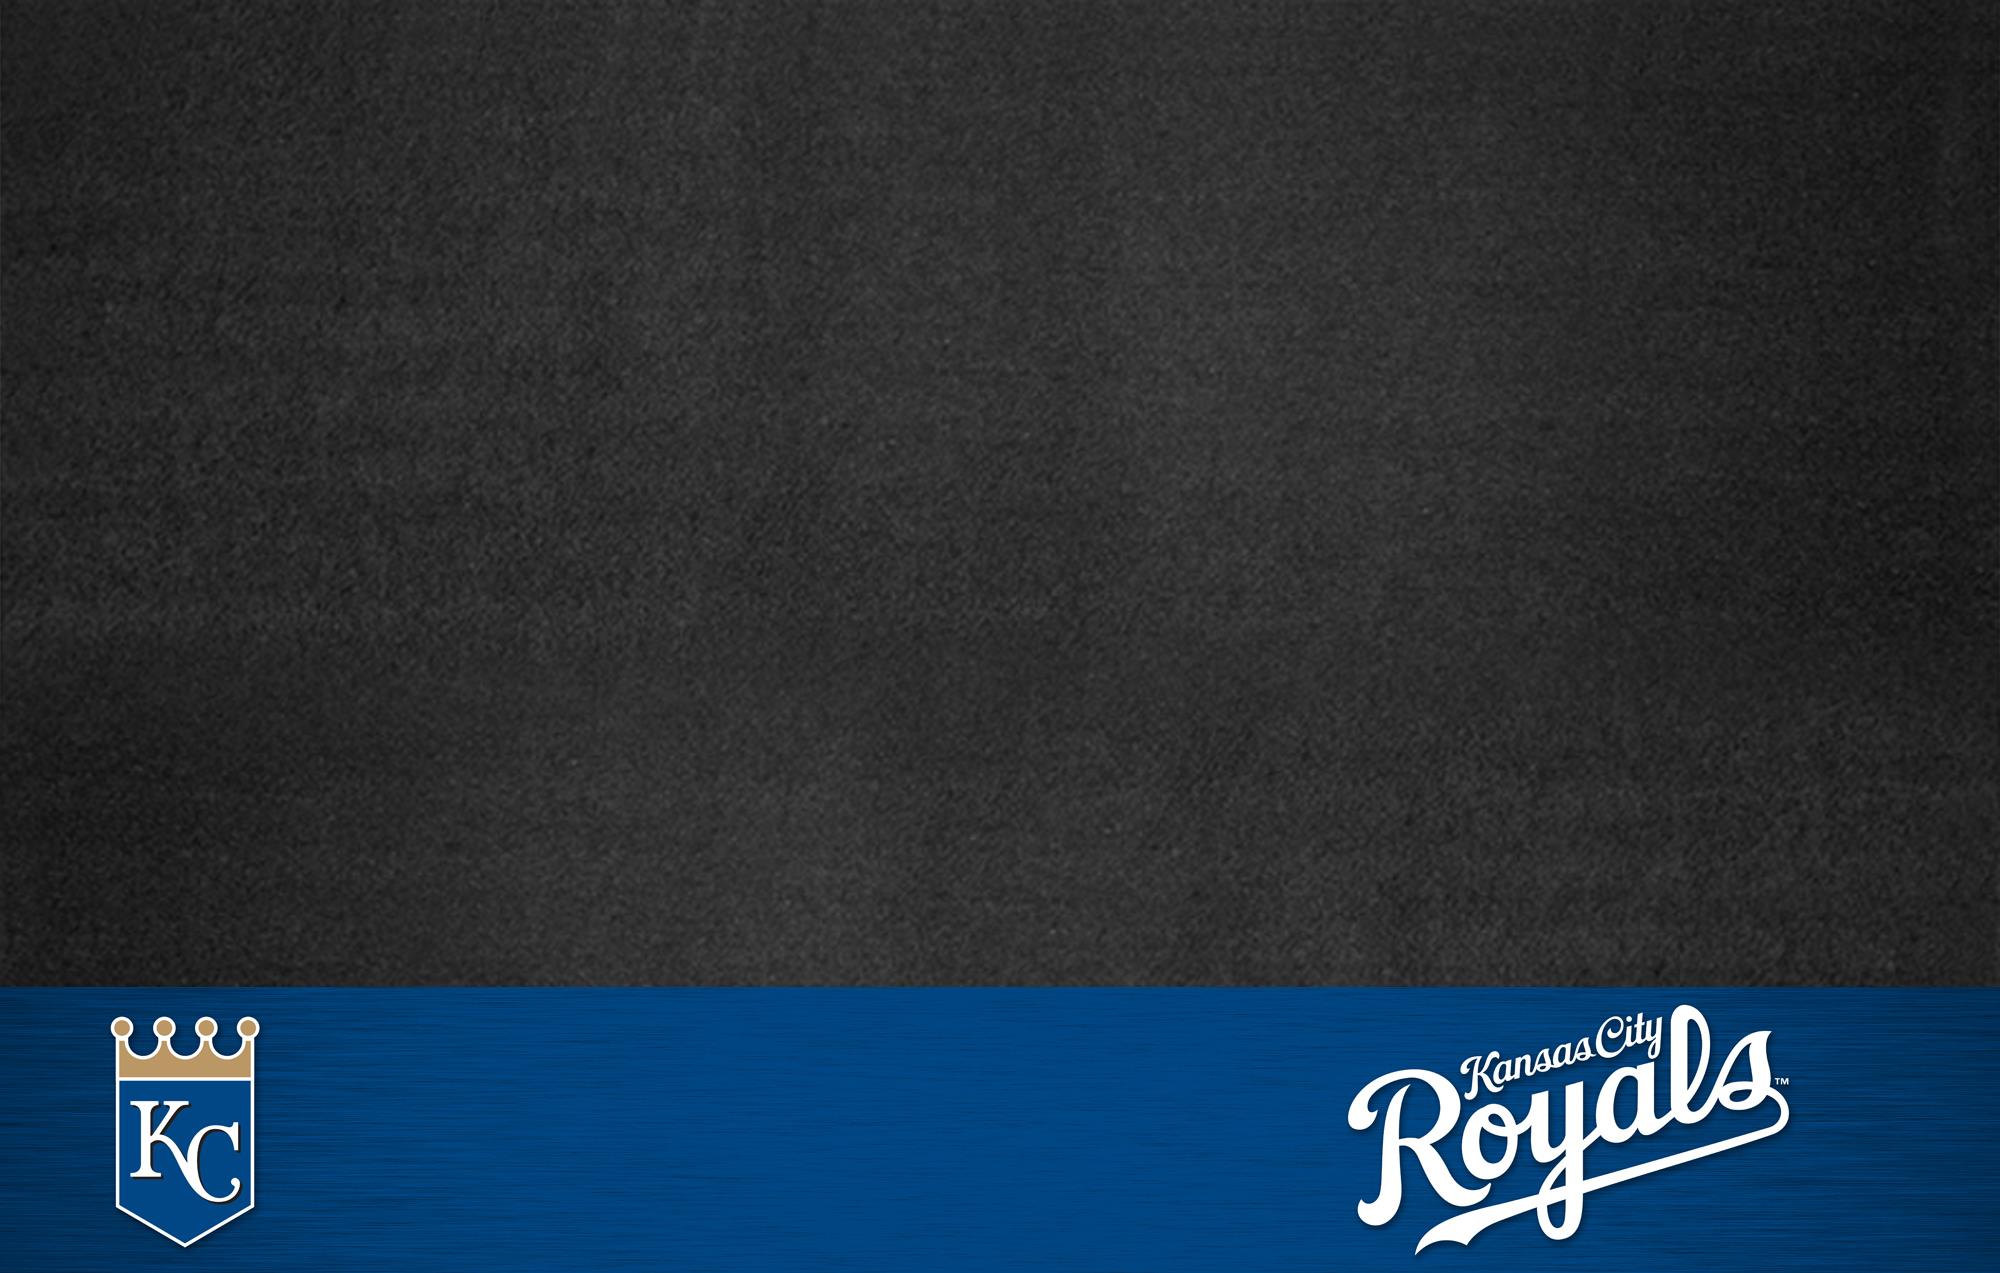 KANSAS CITY ROYALS mlb baseball 38 wallpaper background